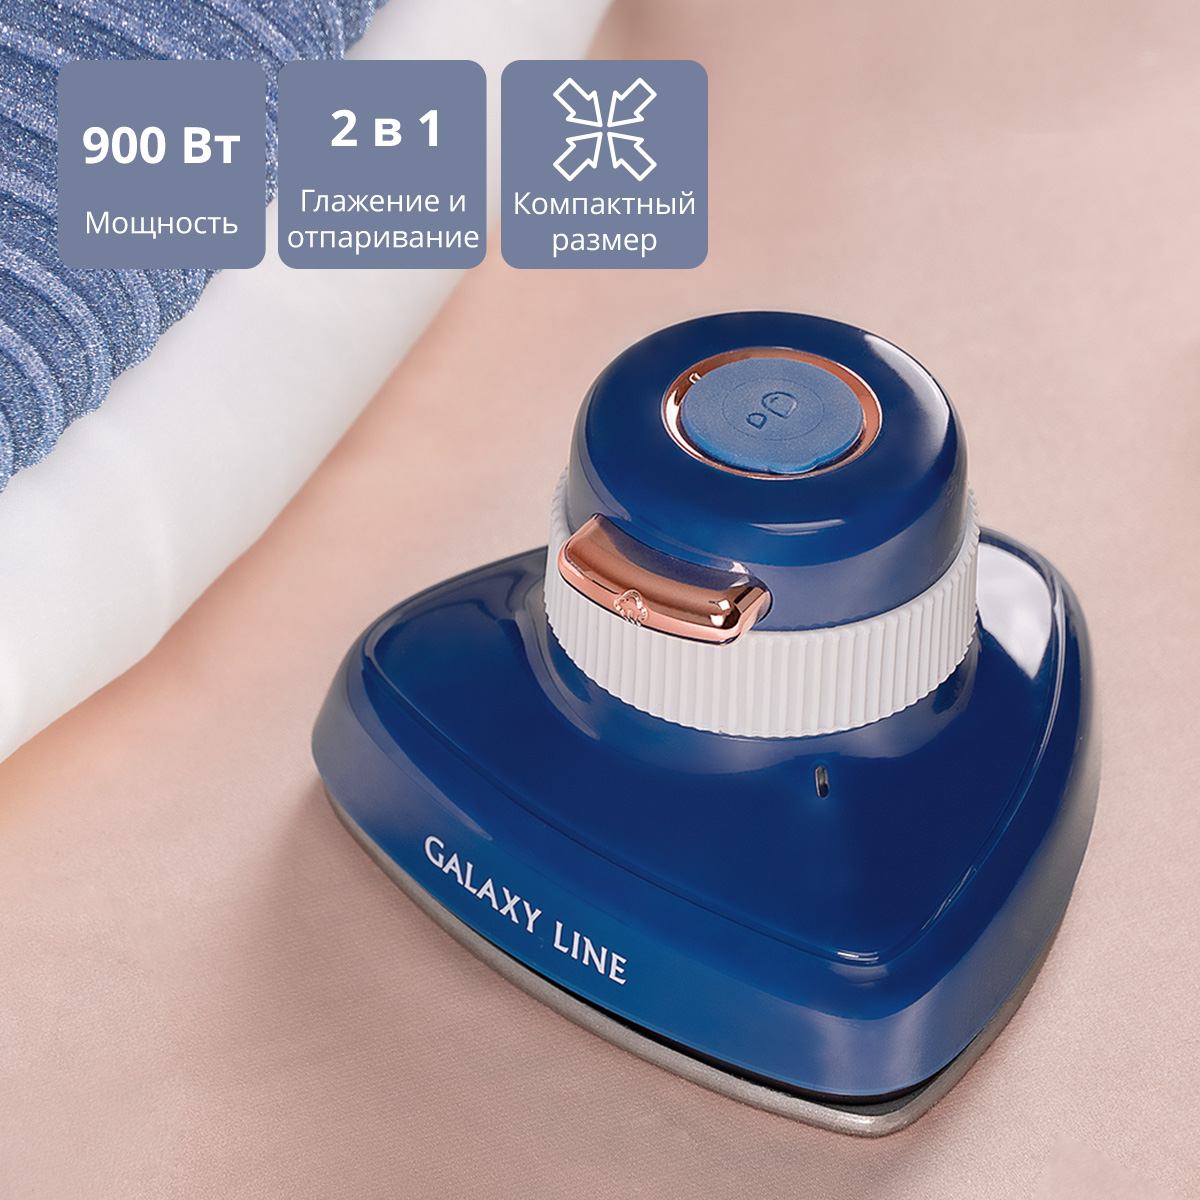 Ручной отпариватель GALAXY LINE GL6286 0.05 л серый, синий ручной плиткорез diam pro line 1000l 600106